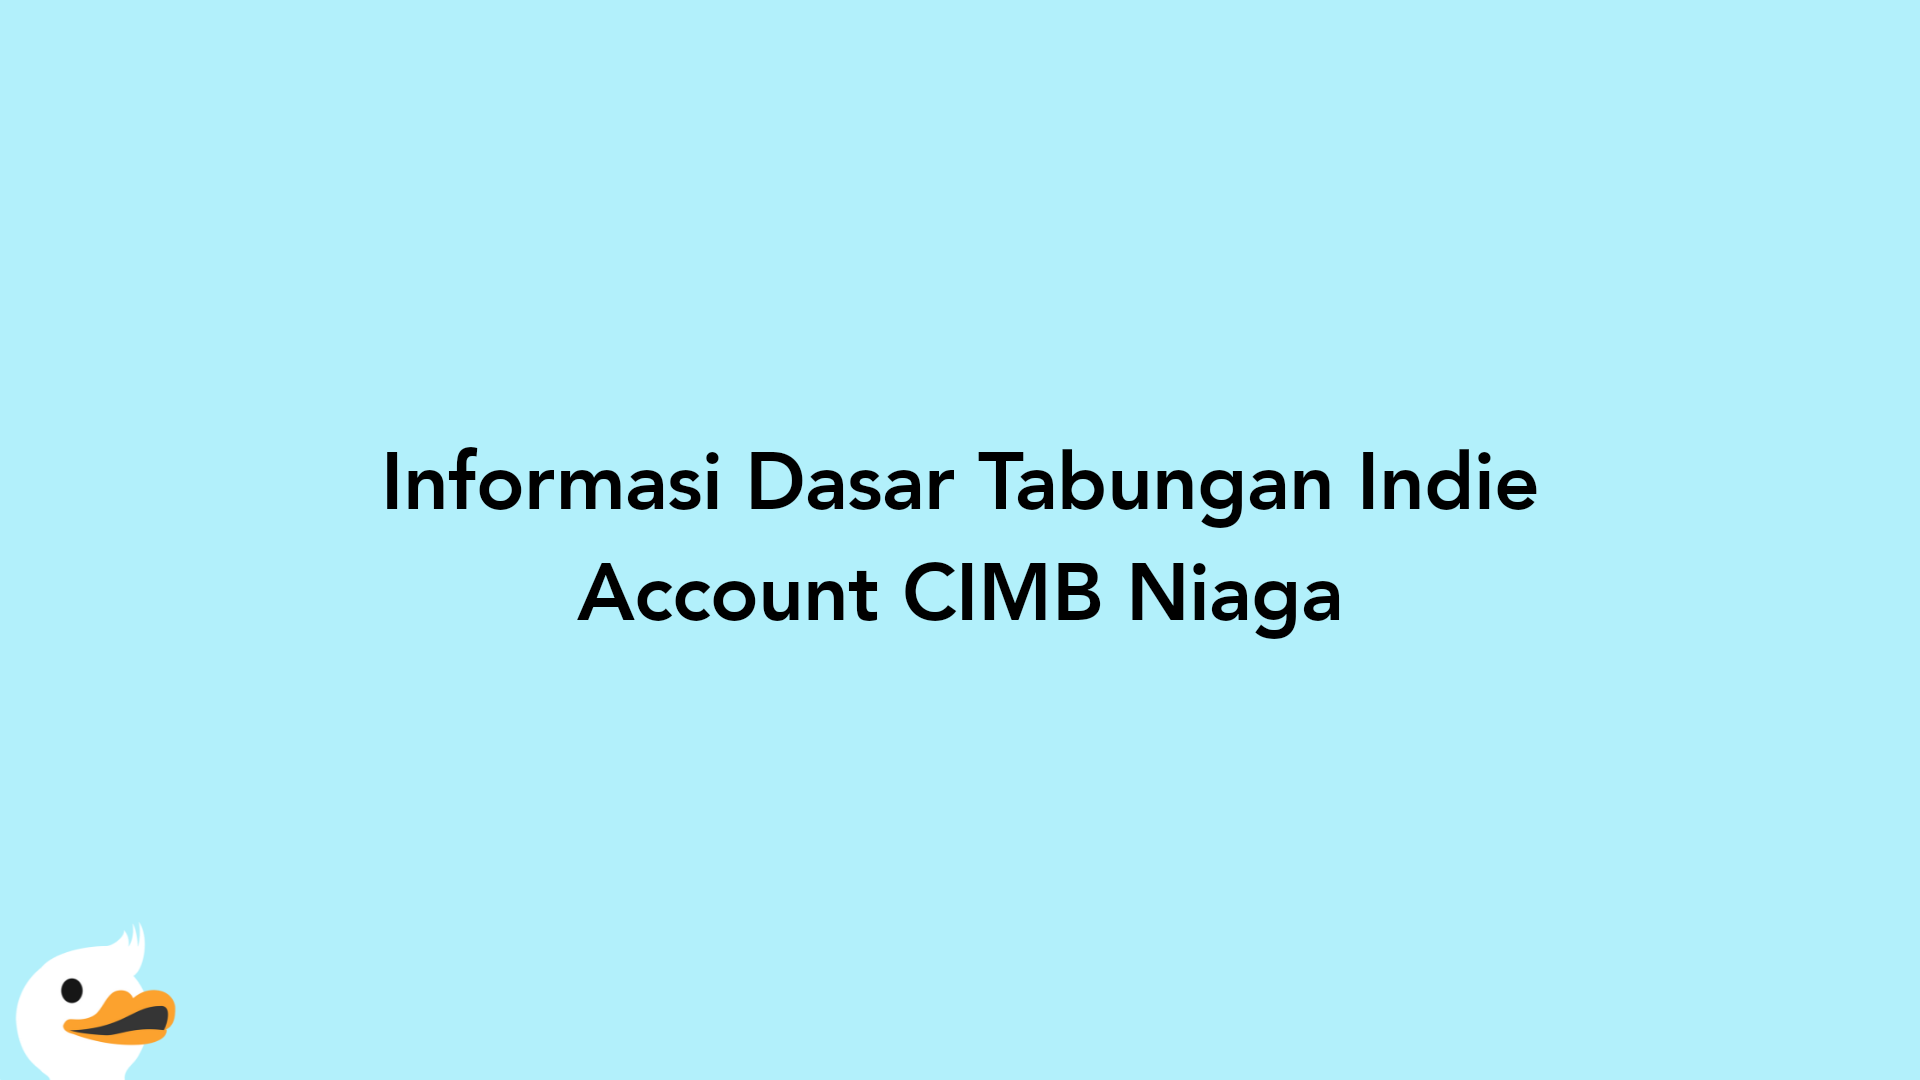 Informasi Dasar Tabungan Indie Account CIMB Niaga